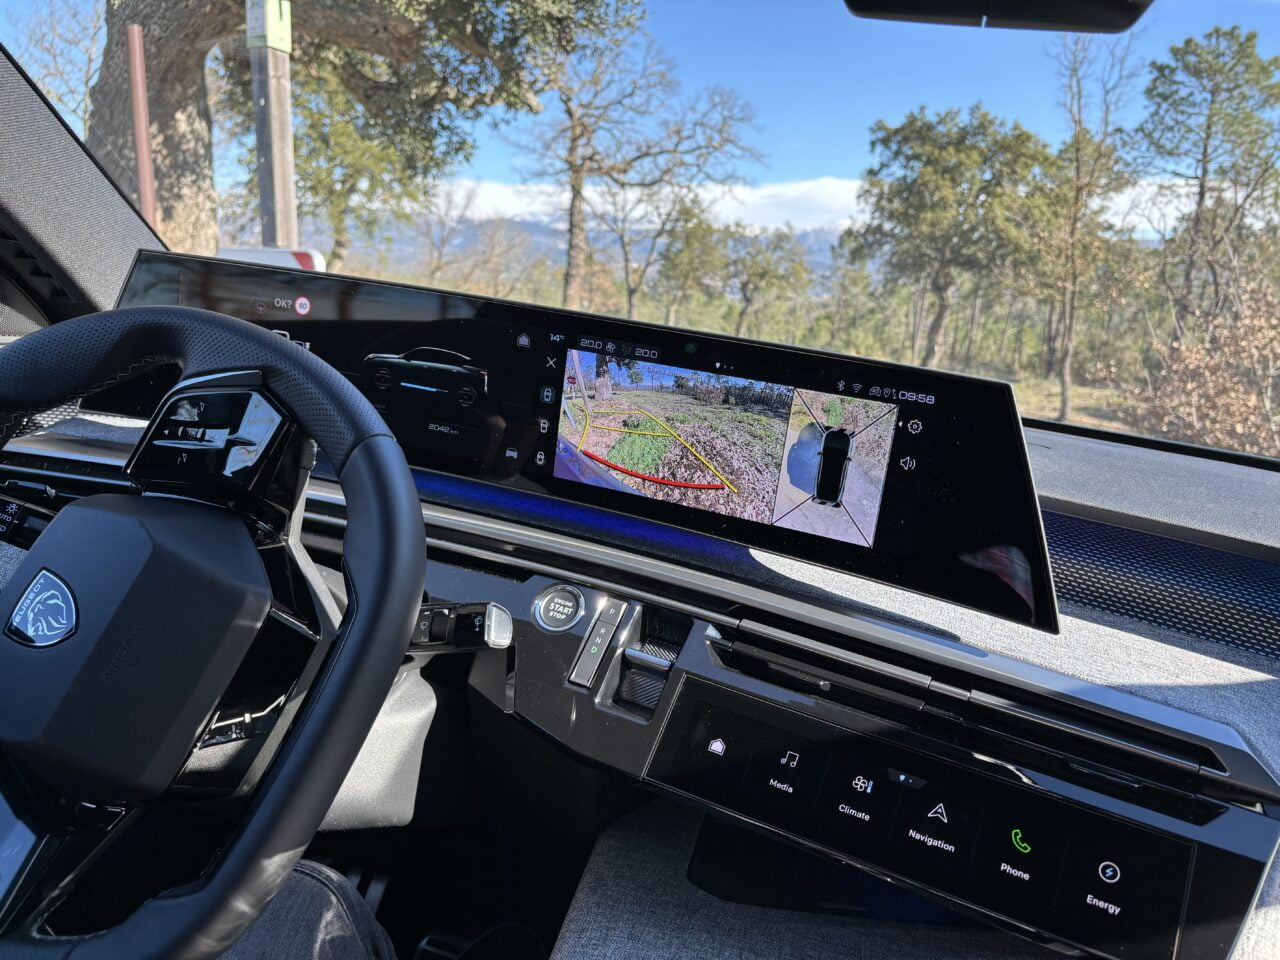 Wnętrze samochodu z widokiem na wielofunkcyjną kierownicę i szeroki ekran dotykowy systemu nawigacyjnego wyświetlający obrazy z kamer zewnętrznych, w tle widoczny krajobraz z drzewami.